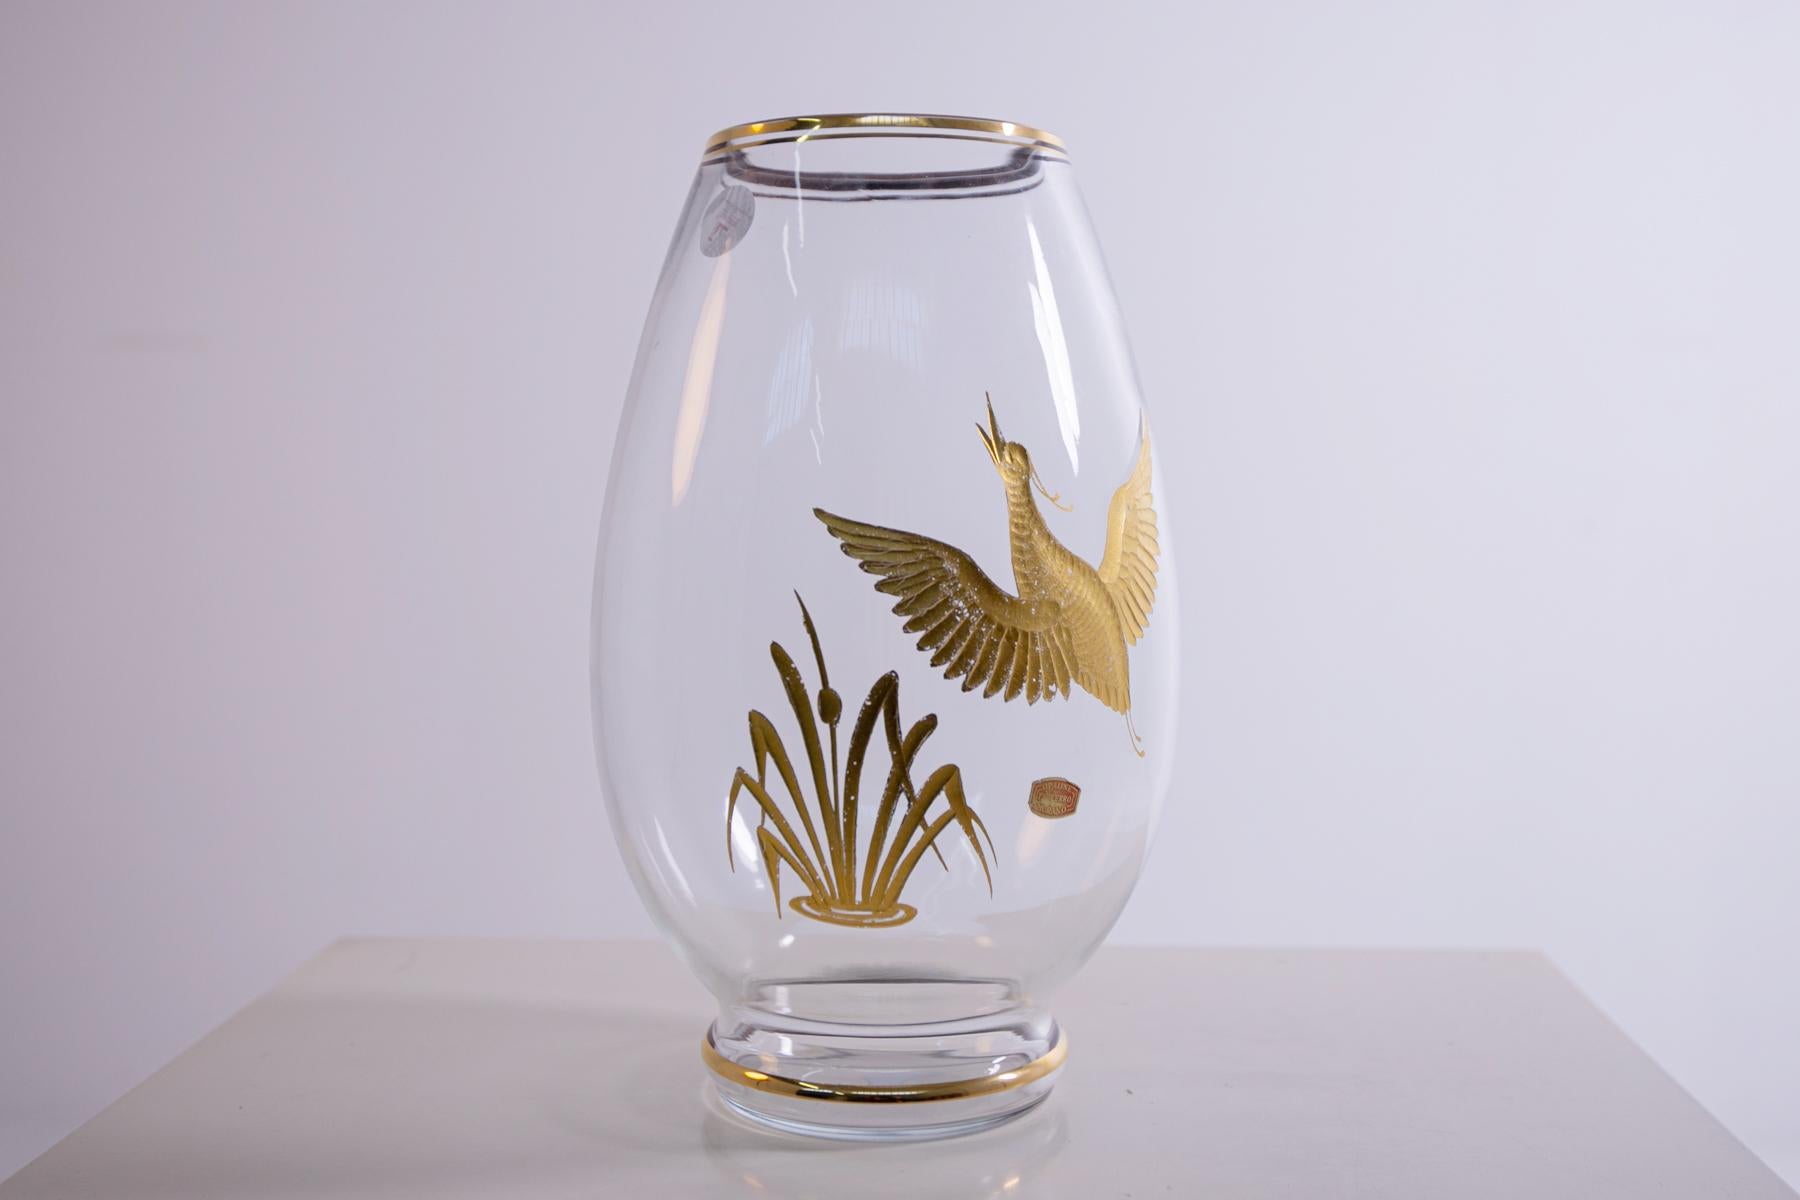 Vase transparent en verre de Murano réalisé par les frères Opaline Ferro pour Finzi en 1950. Marqué sur la base et sur le label original.
Le vase de Murano a été réalisé avec des techniques spéciales de traitement du verre soufflé et comporte des